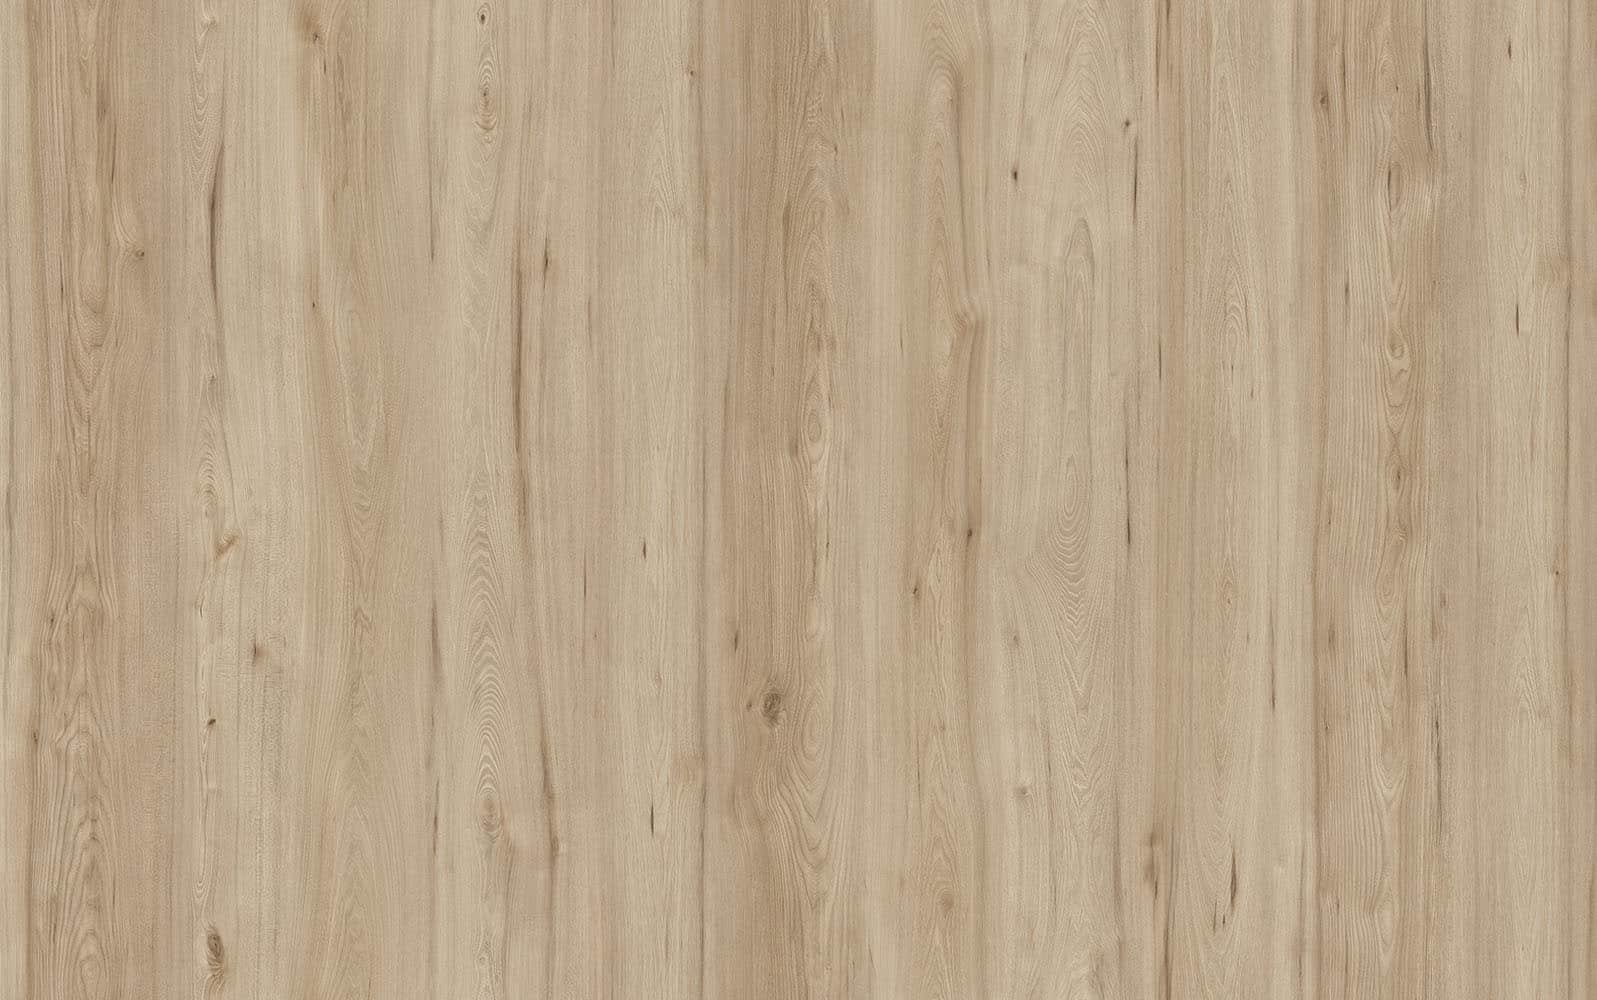 Wood Wise By Amorim 100 Waterproof Cork Flooring In Cyber Oak